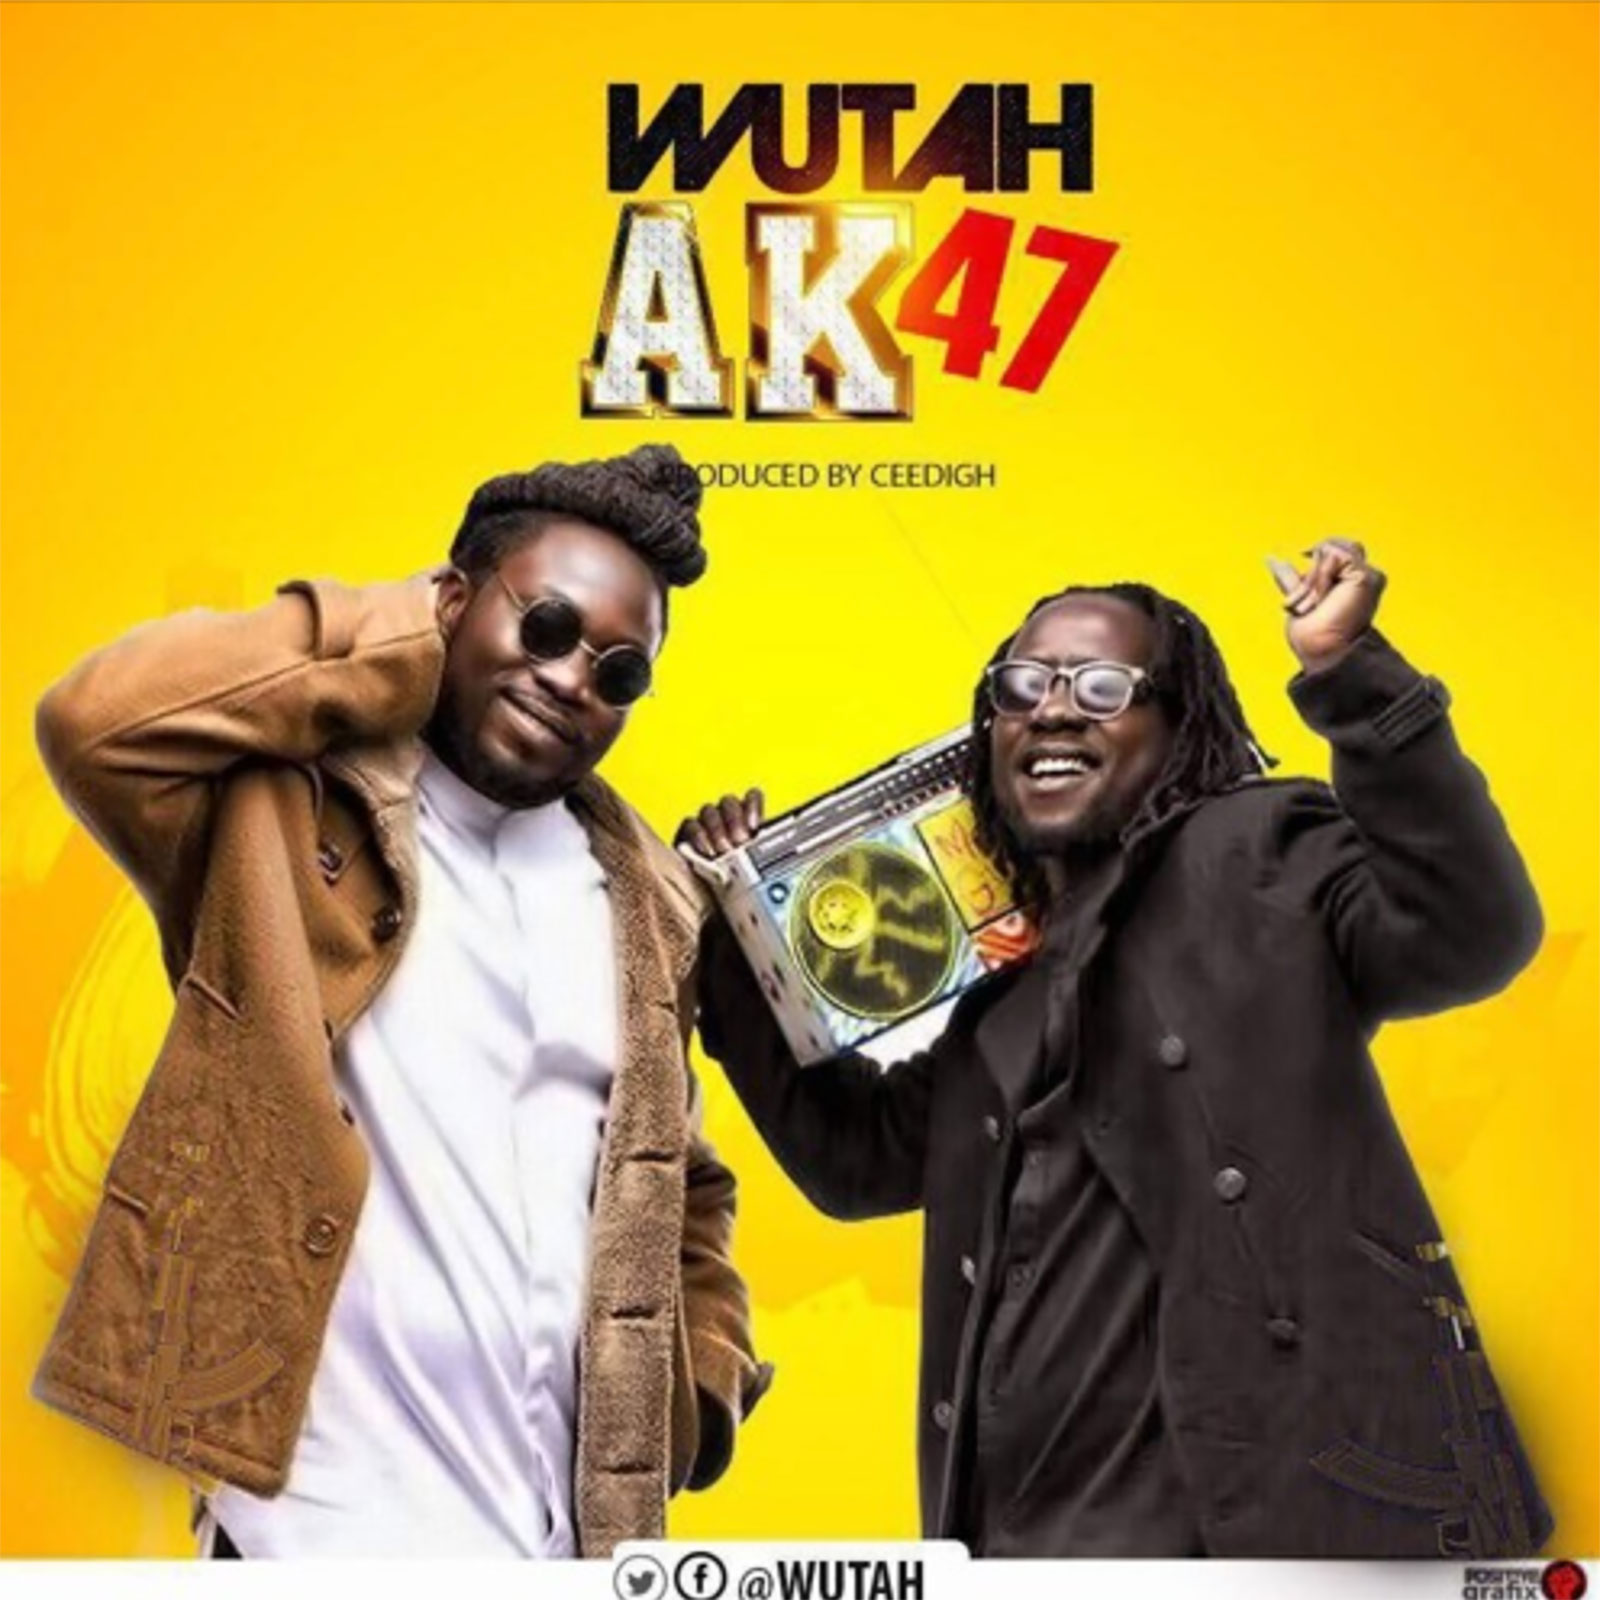 AK47 by Wutah